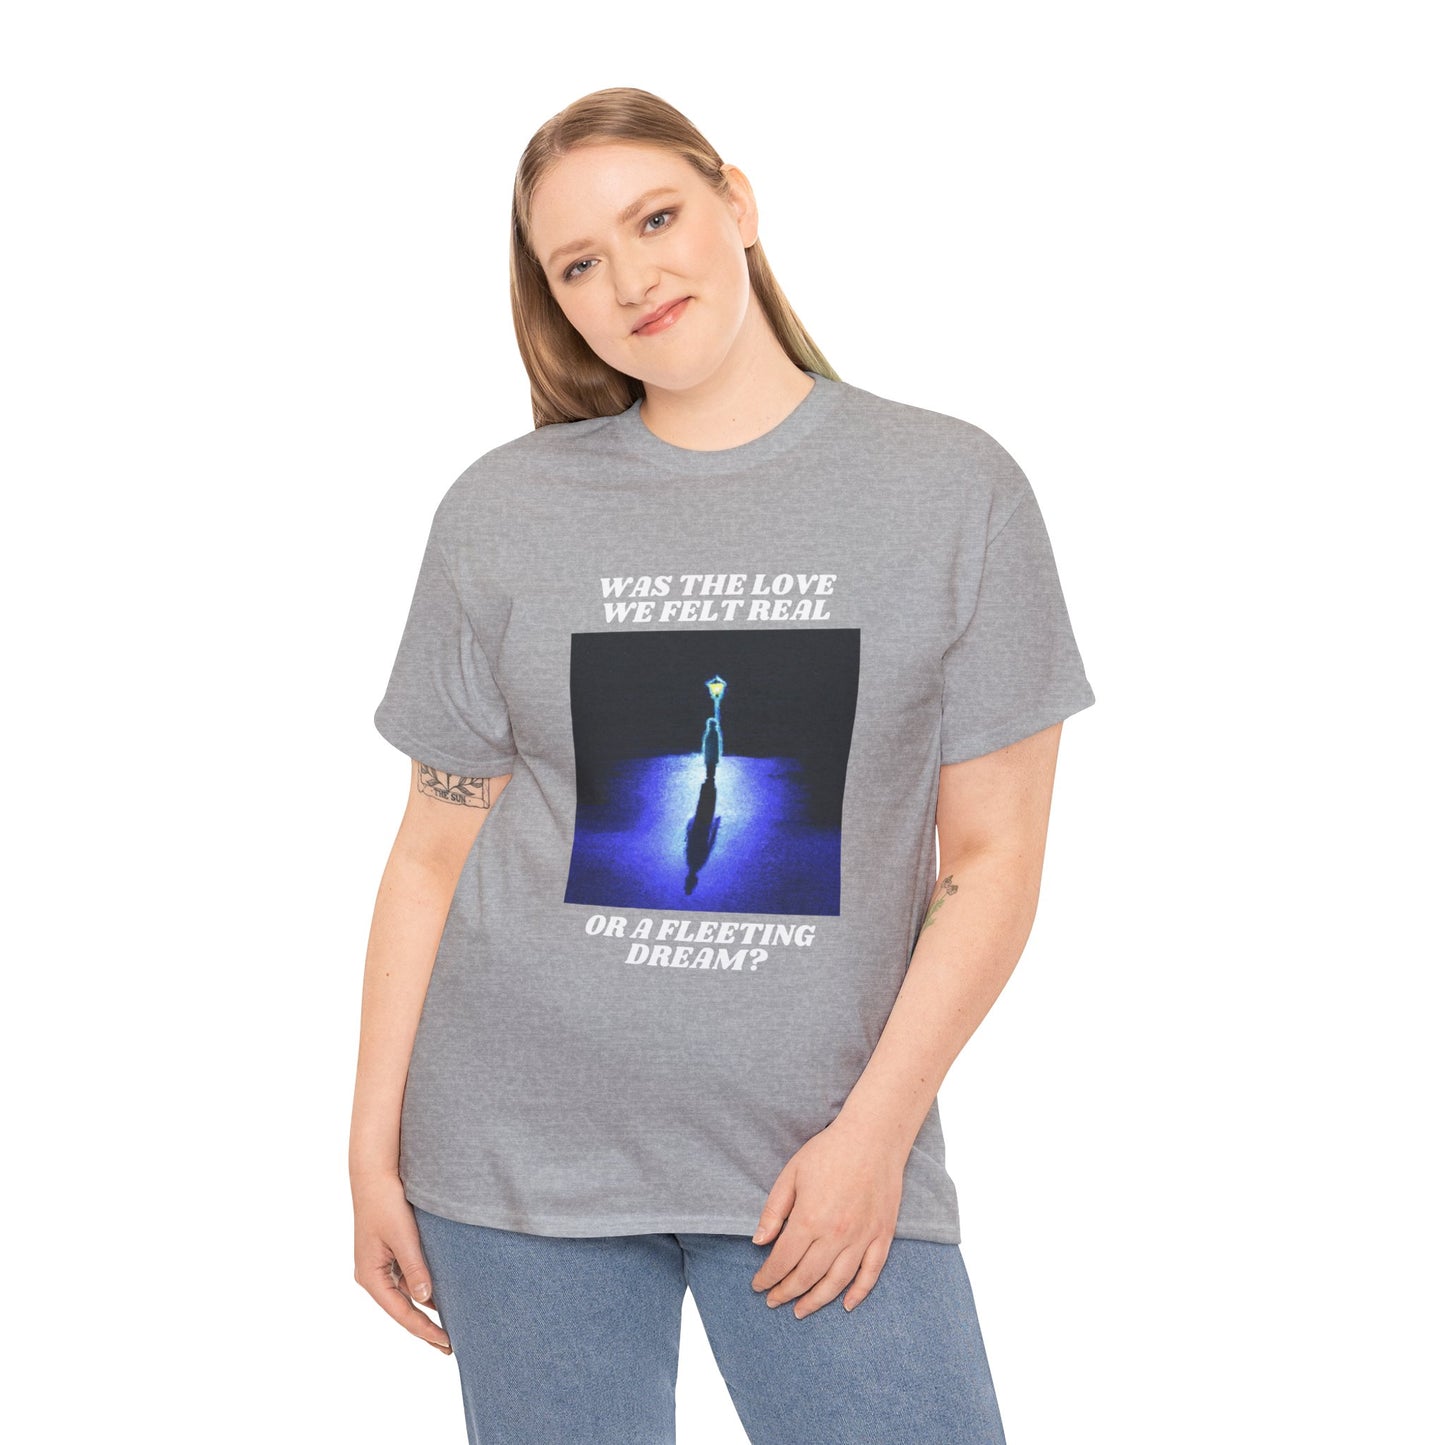 Sueño fugaz - Camiseta (solo diseño frontal)